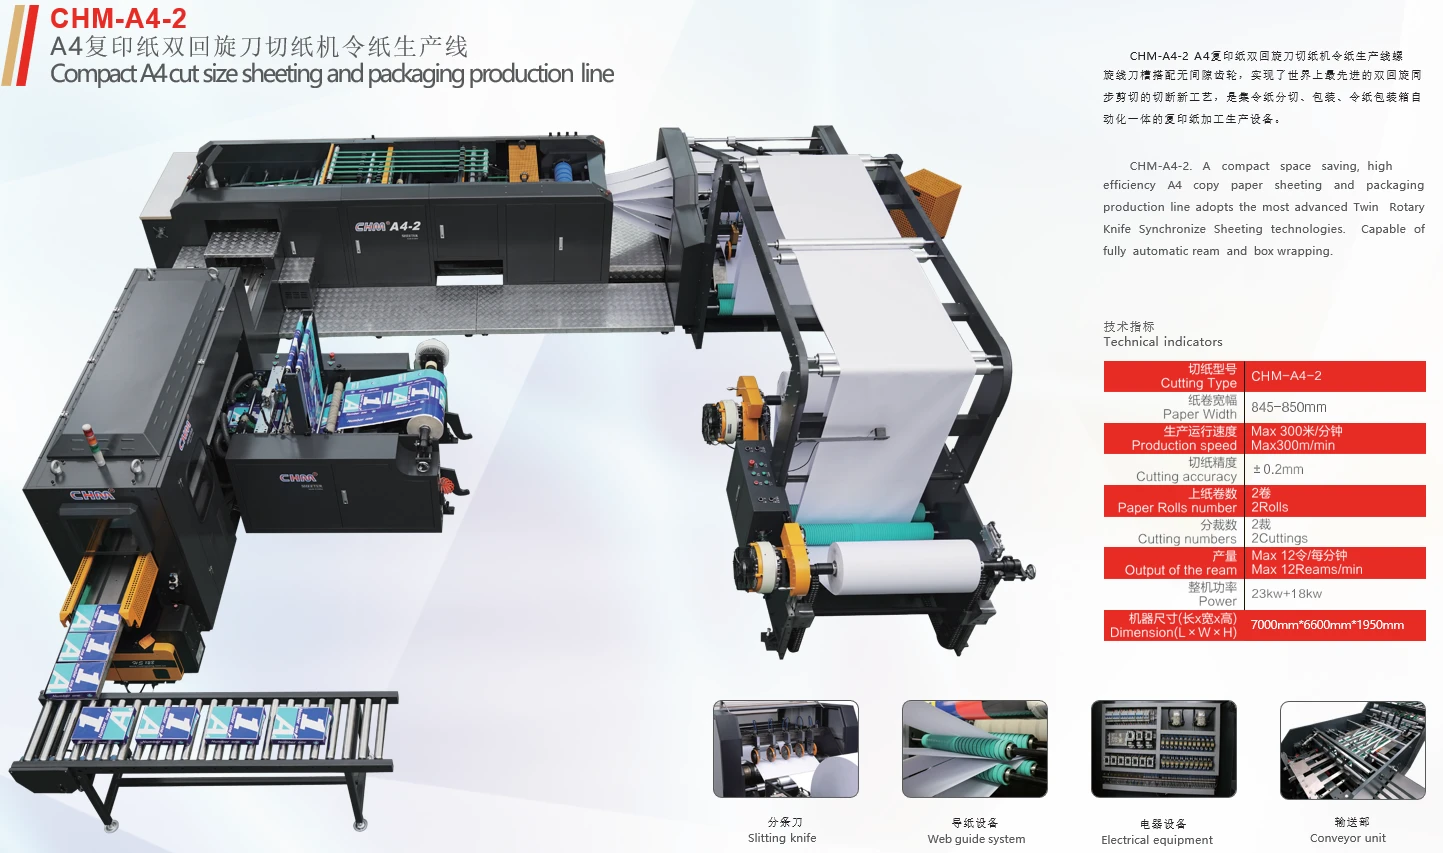 rizla machine paper product making machinery